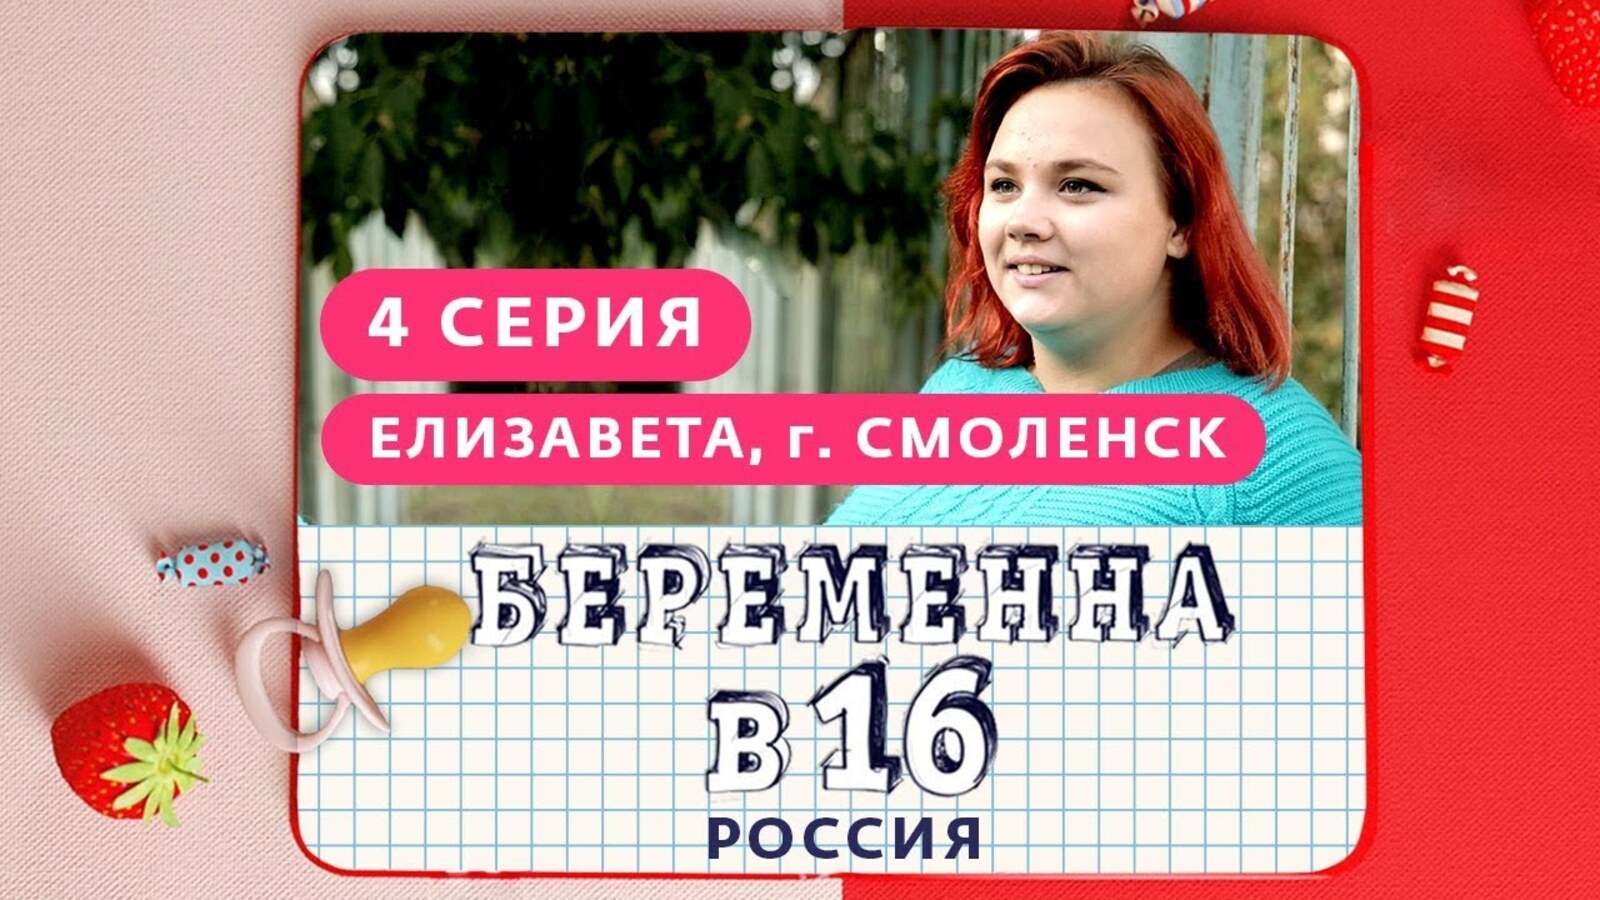 Беременна в 16 учитель информатики на русском. Беременна в 16. Беременна в 16 обложка. Беременна в 16 зпстпвка.